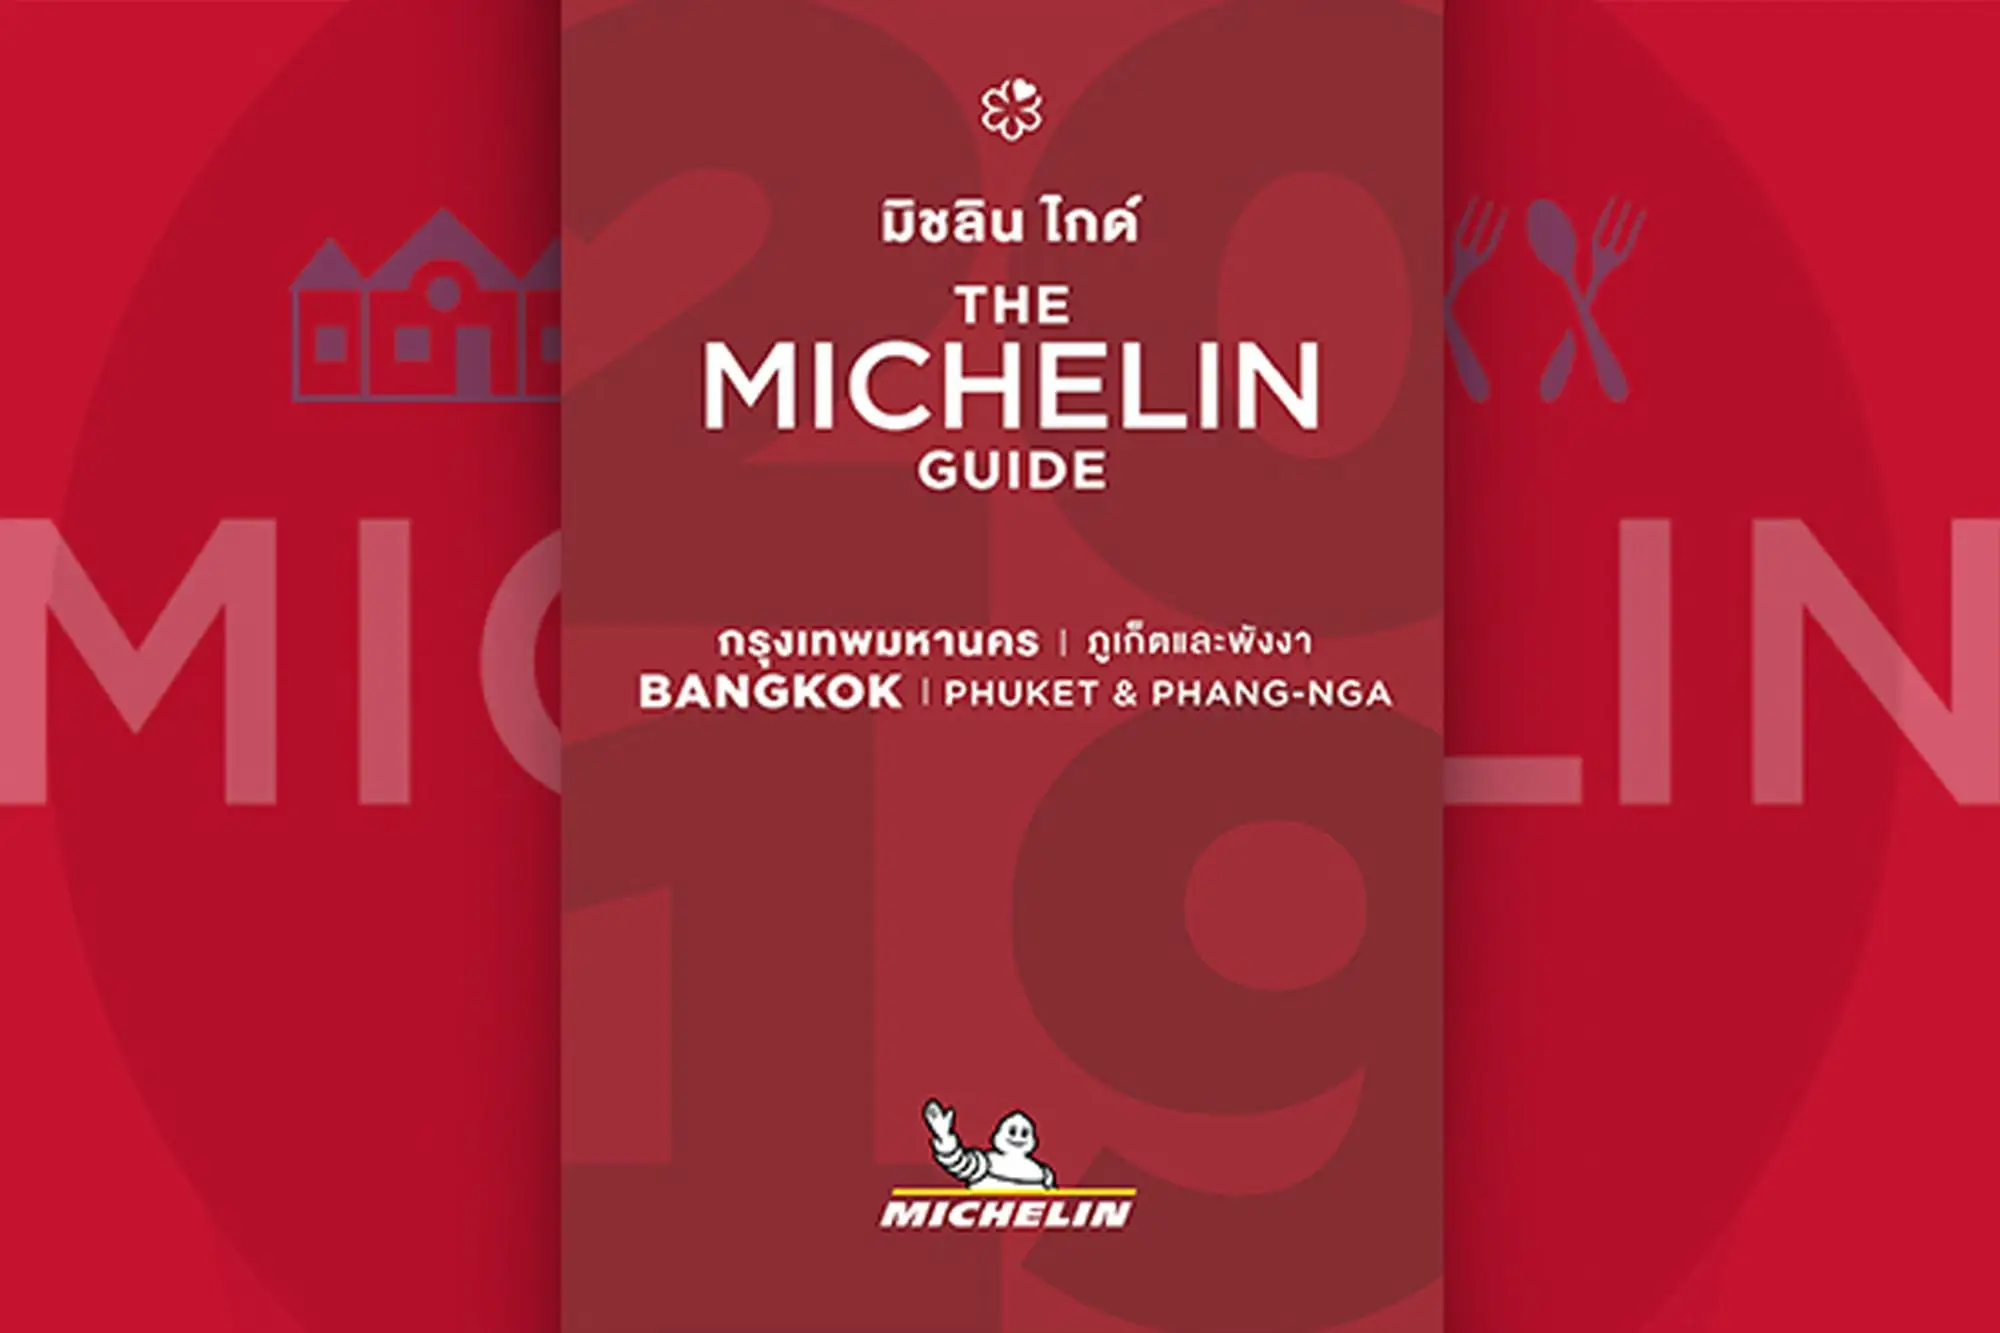 2019 米其林指南 michelin guide 2019 米其林餐厅 米其林 指南 2019 米其林